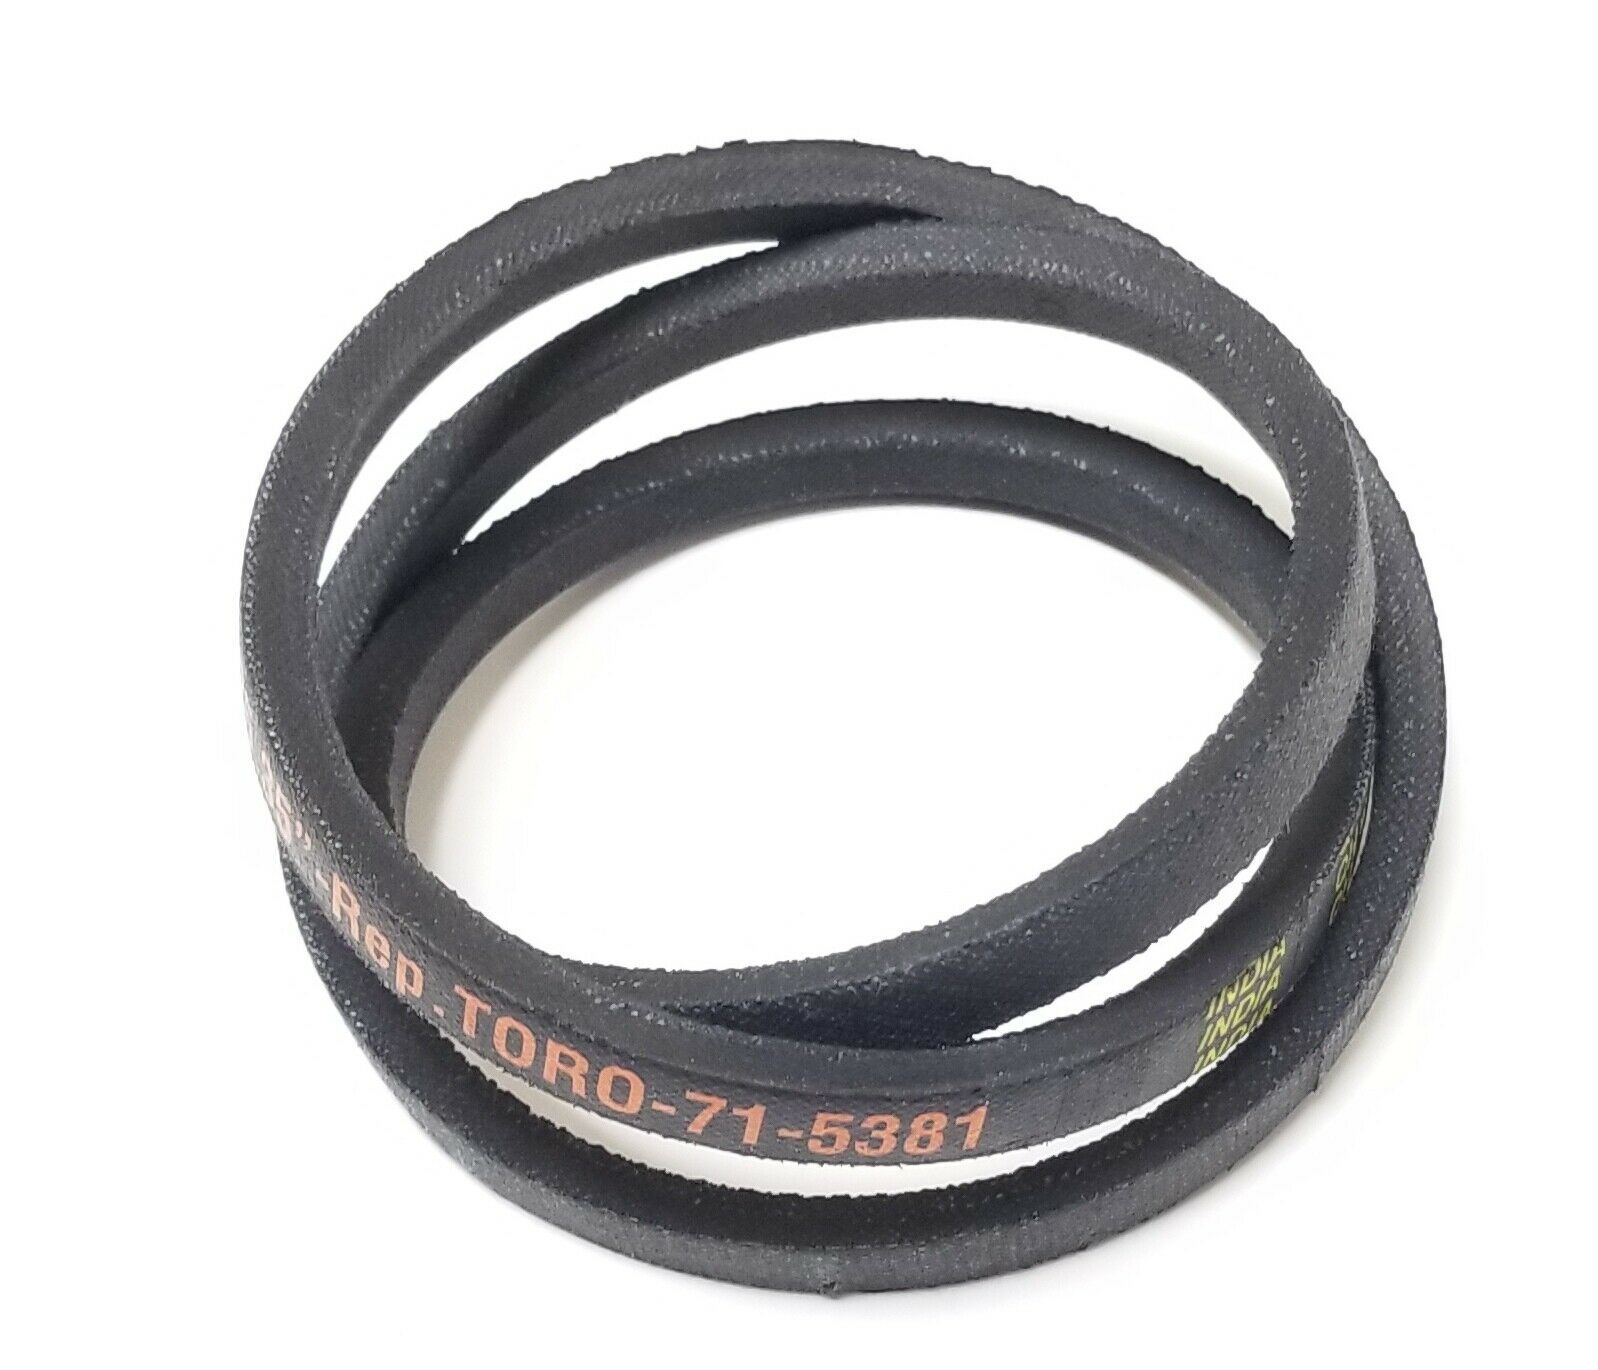 Primary image for 3/8" X 34.75" Snowblower Belt For Toro 71-5381, 715381 Drive Belt Model CCR1000